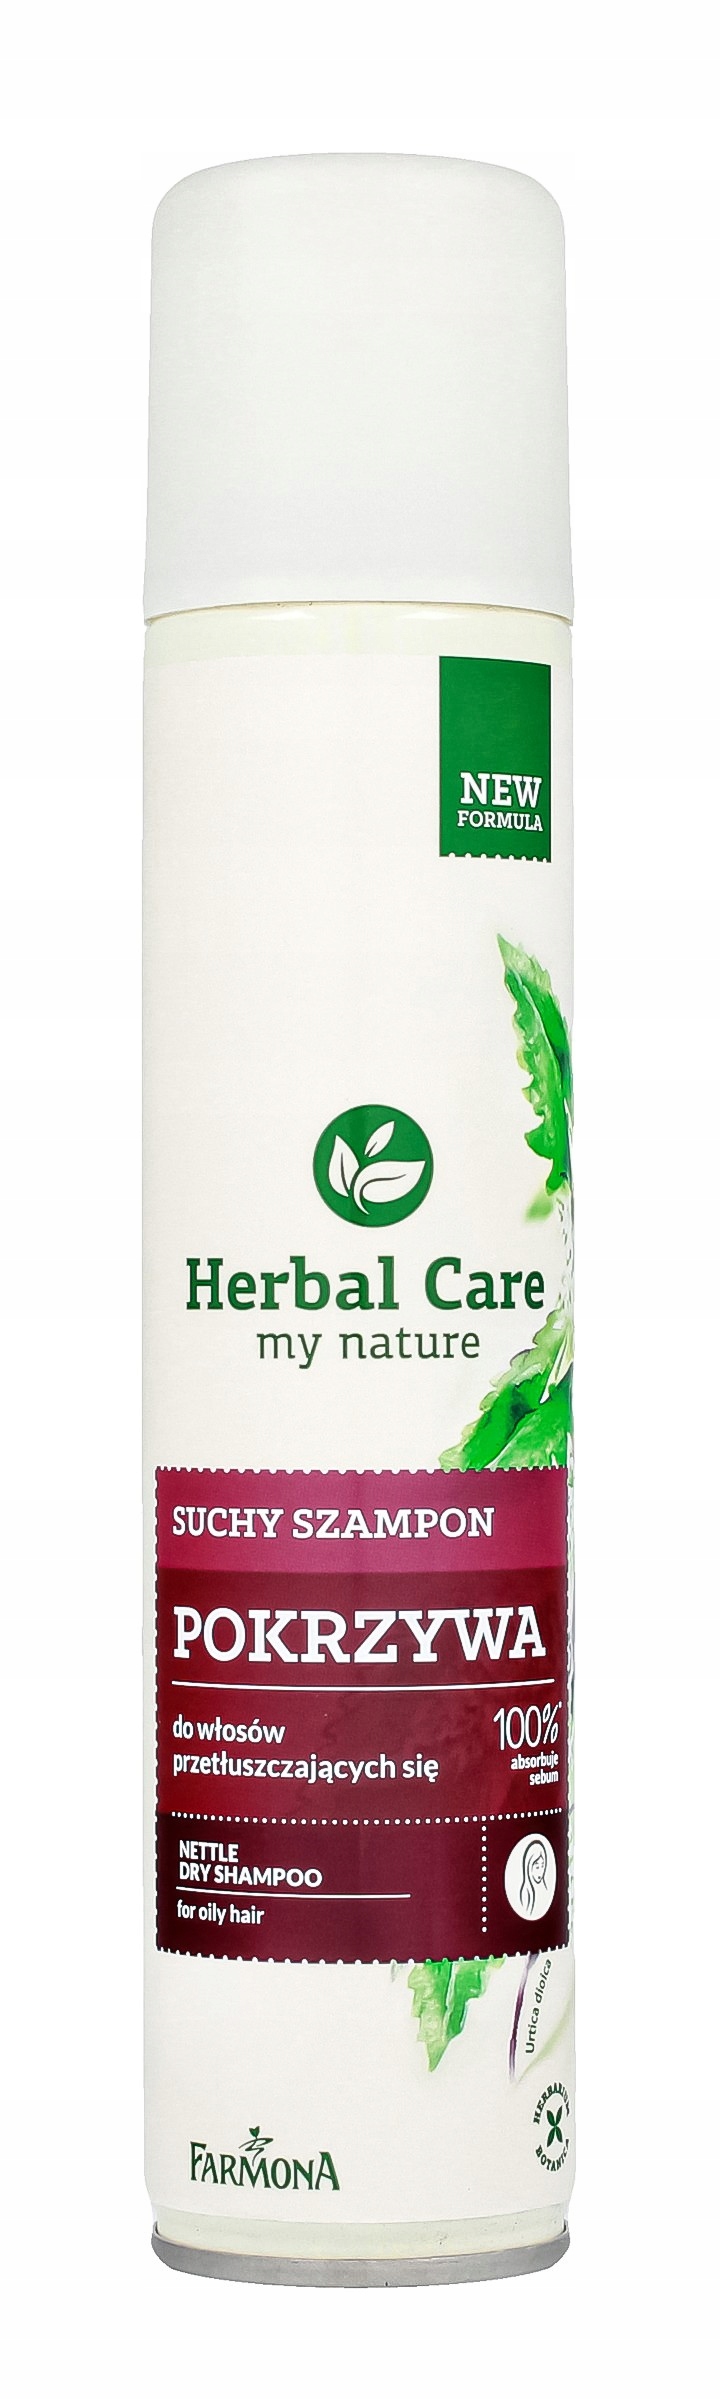 drogeriawispolfarmona herbal suchy szampon